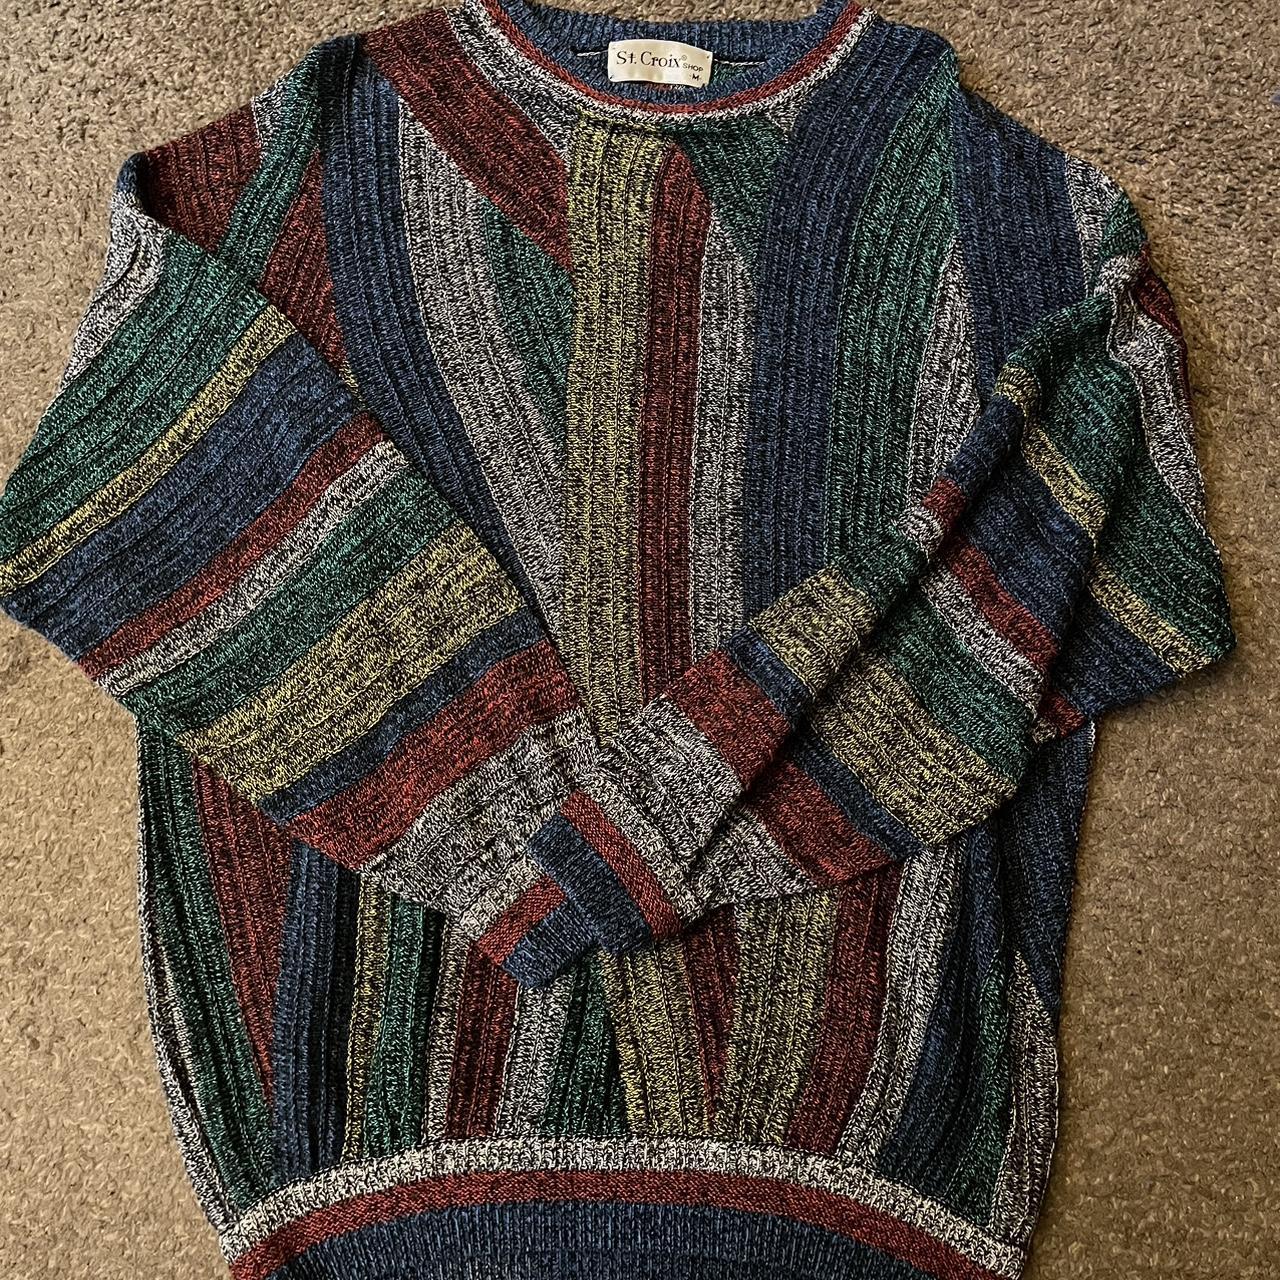 St. Croix vintage sweater $20 or best offer - Depop